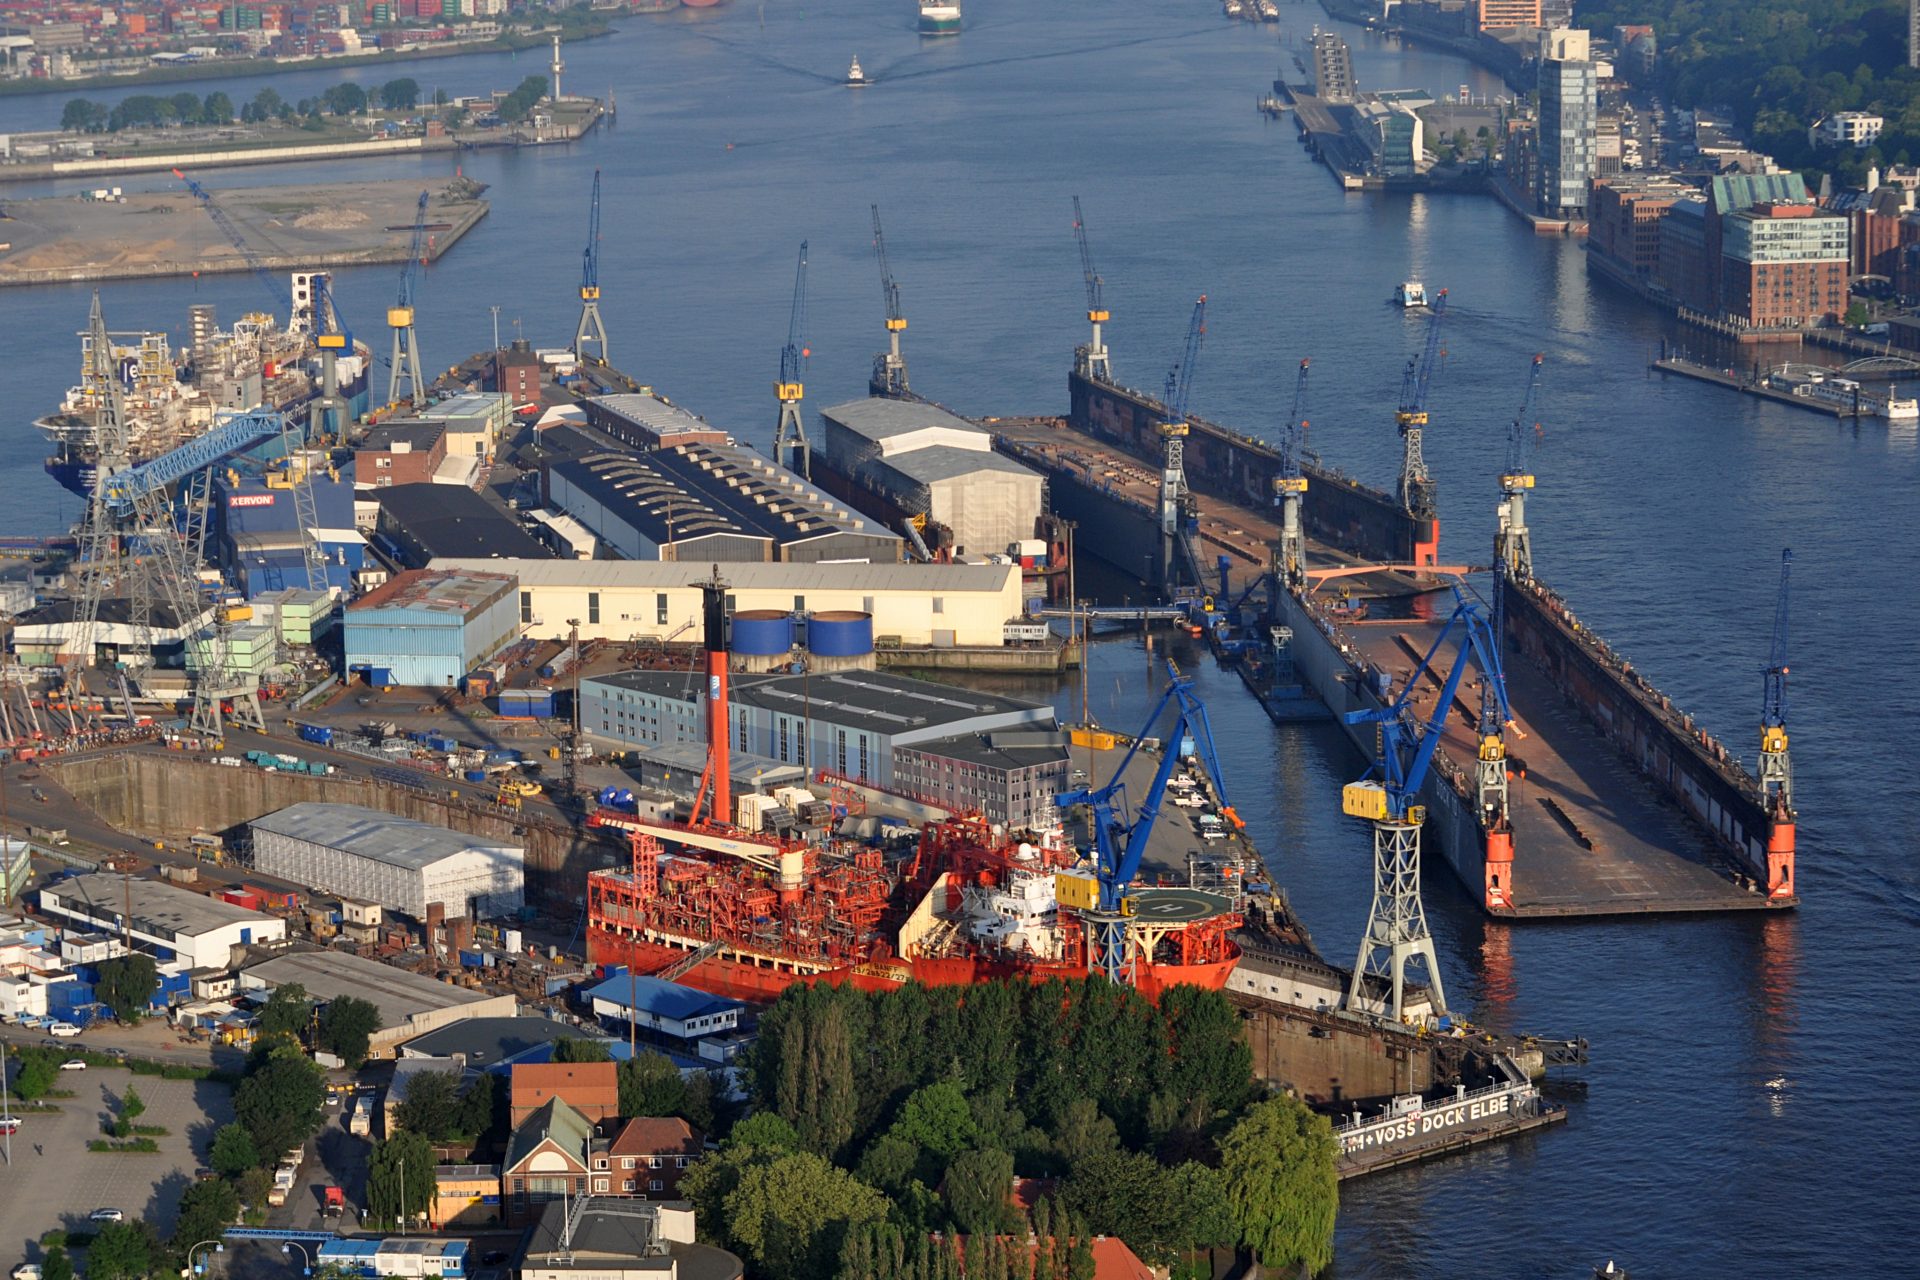 Blohm + Voss Shipyard